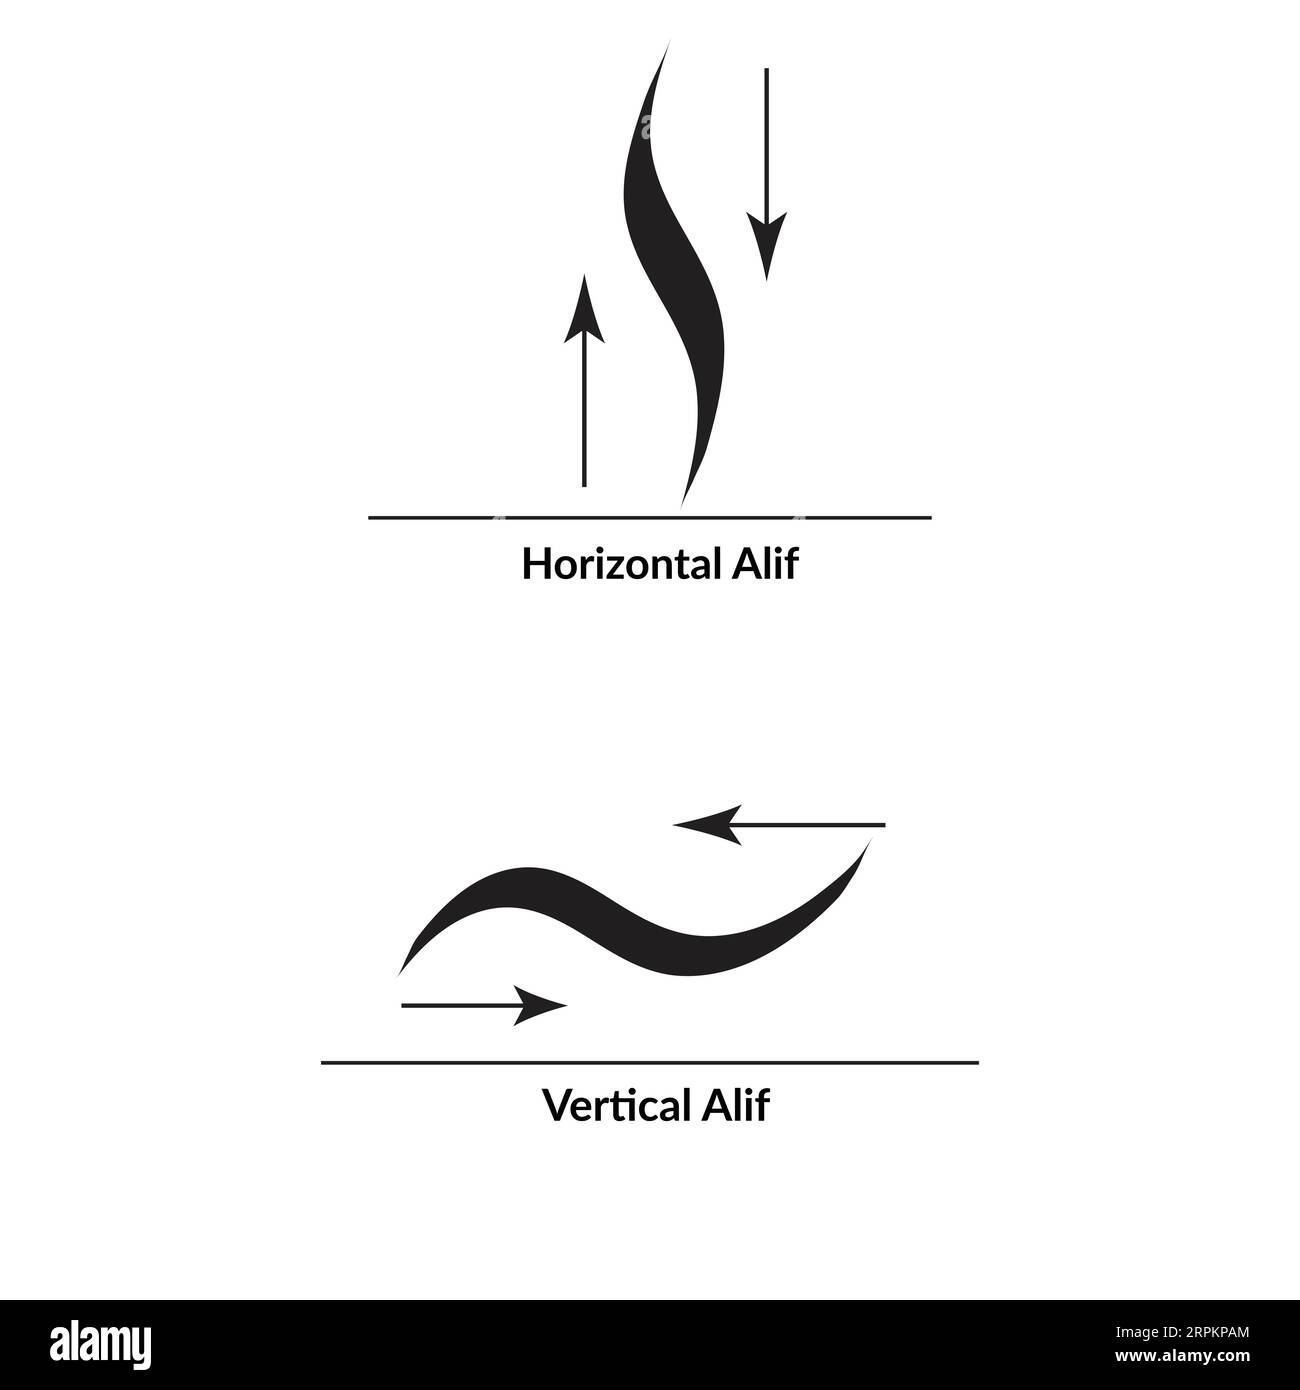 Calligraphie arabe style Al-Saif, alphabets ba abd ta en deux variantes. Illustration de Vecteur